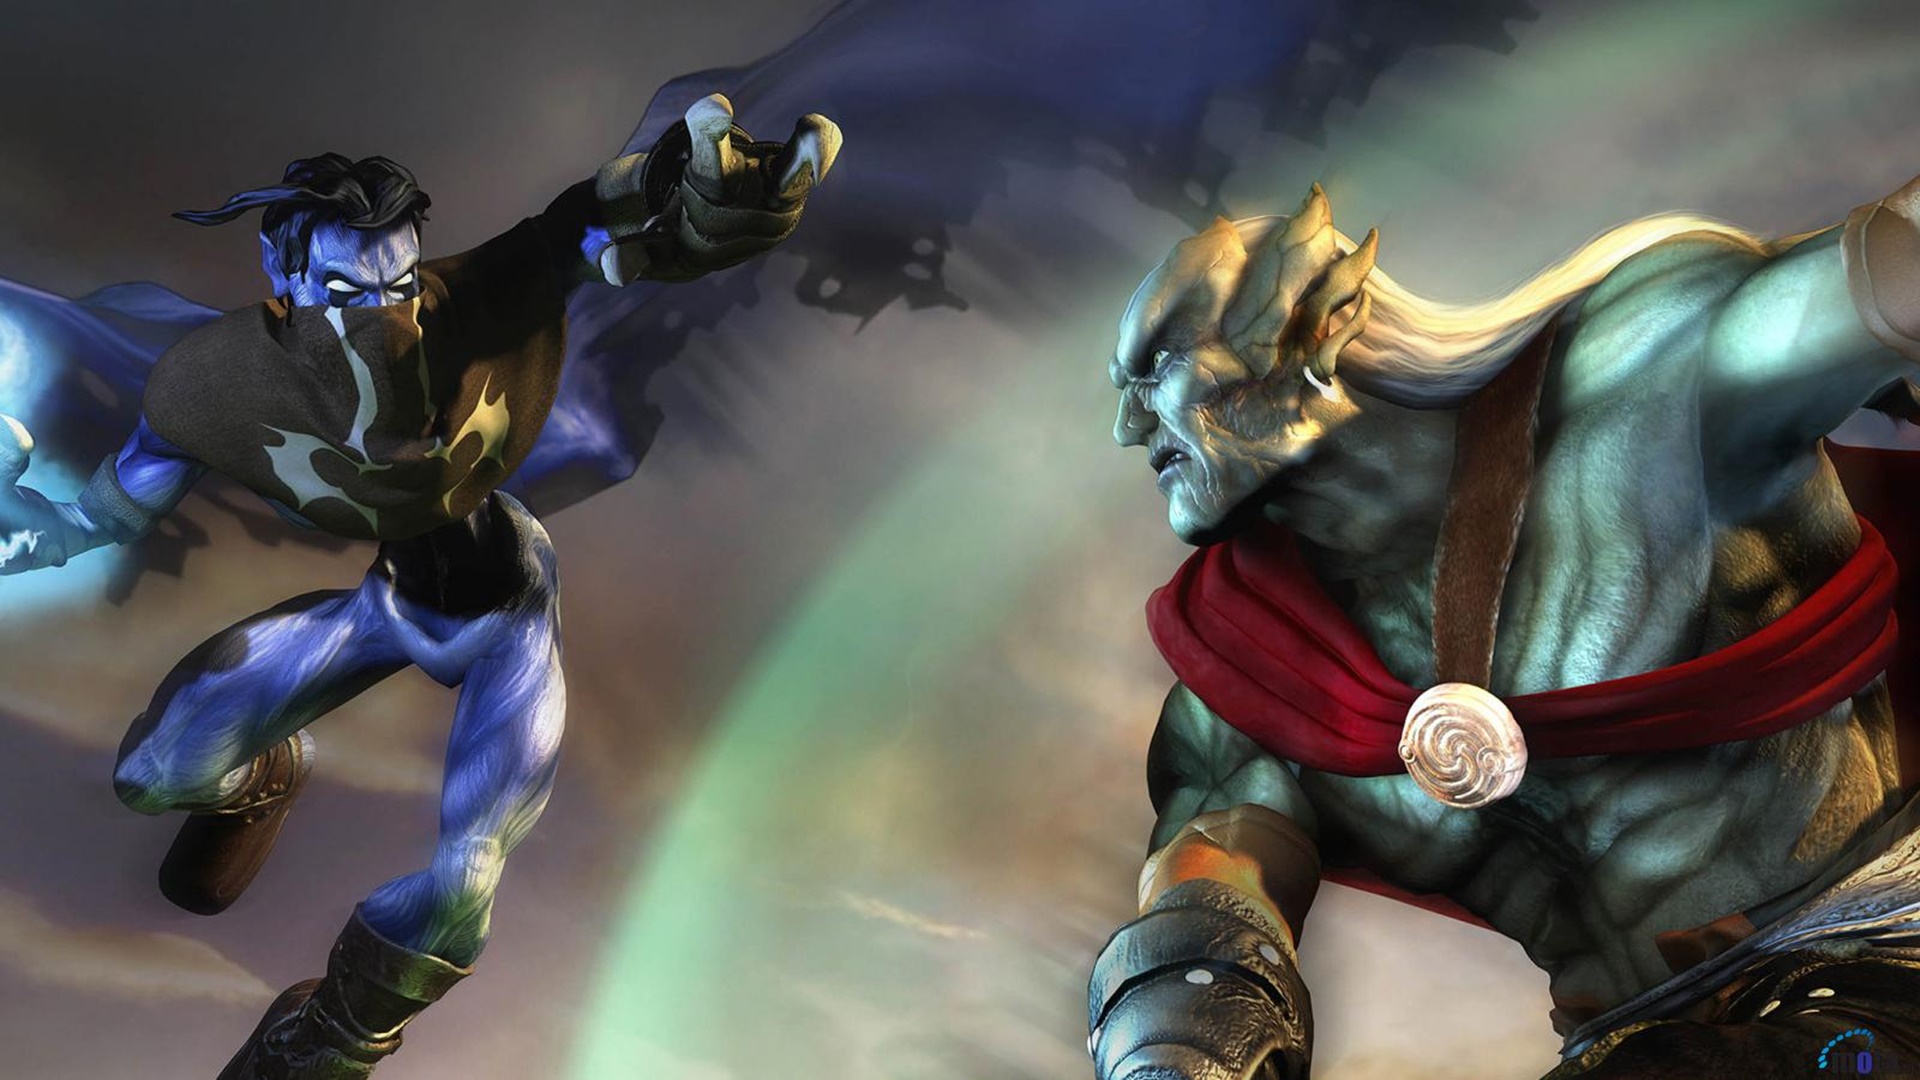 Một cuộc chiến giữa Kain và Raziel, nhân vật chính của Legacy of Kain, một trong những trò chơi ma cà rồng hay nhất trên PC